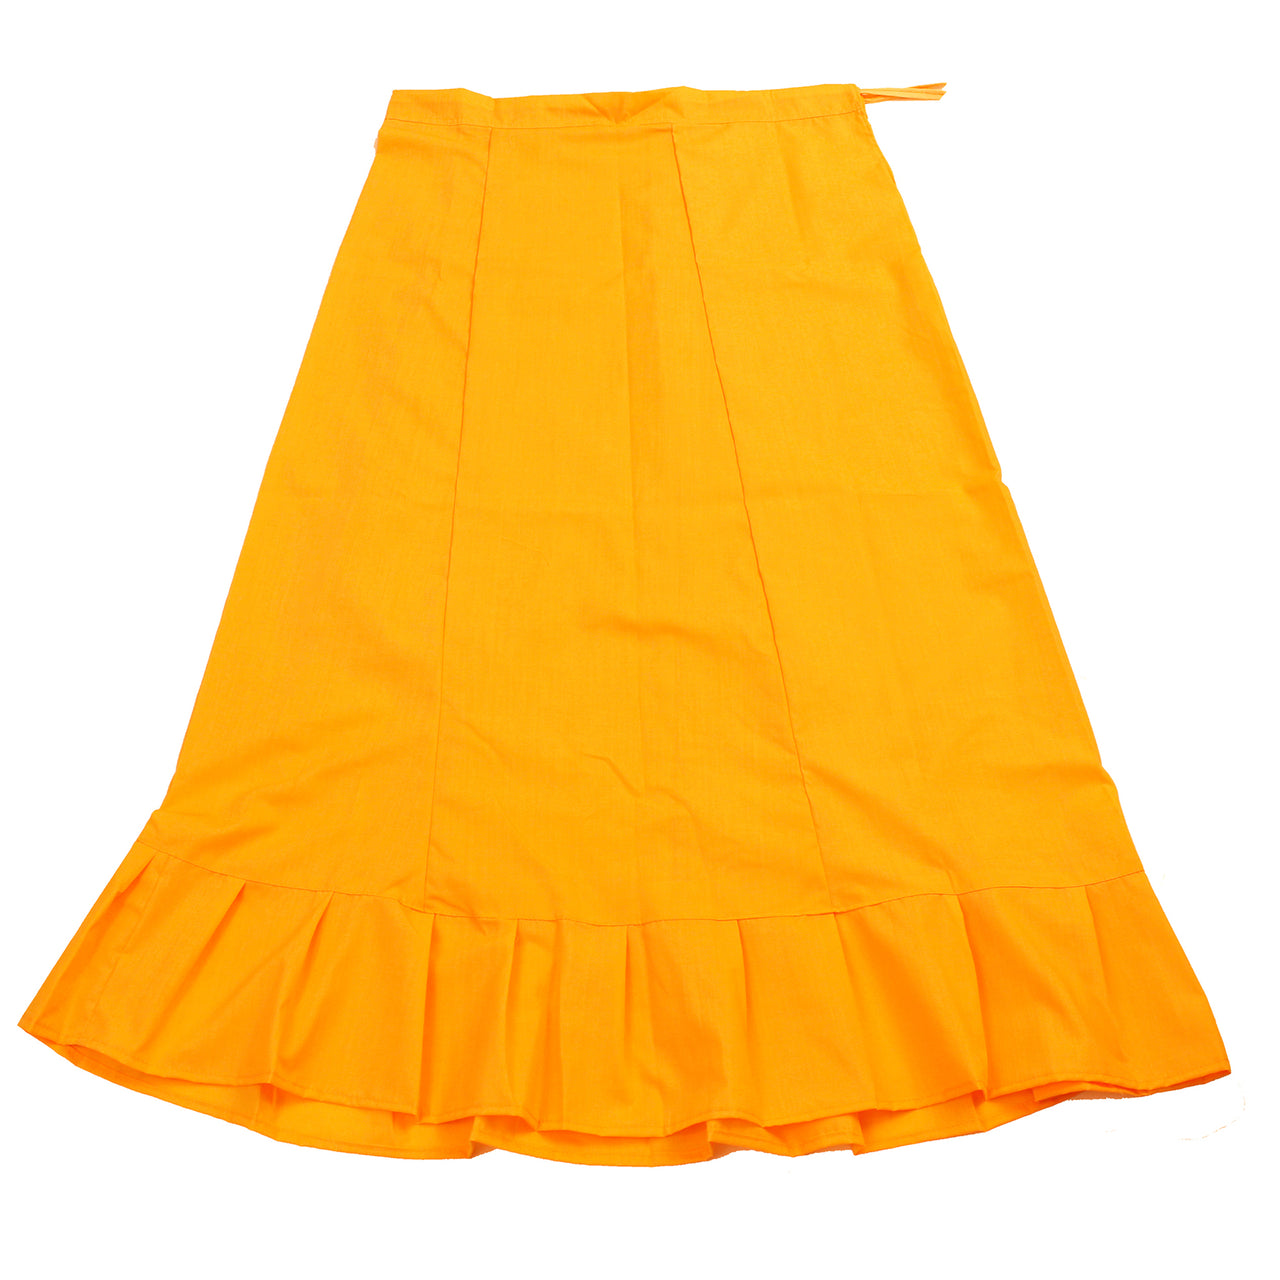 Light Orange - Sari (Saree) Petticoat - Available in S, M, L & XL - Underskirts For Sari's